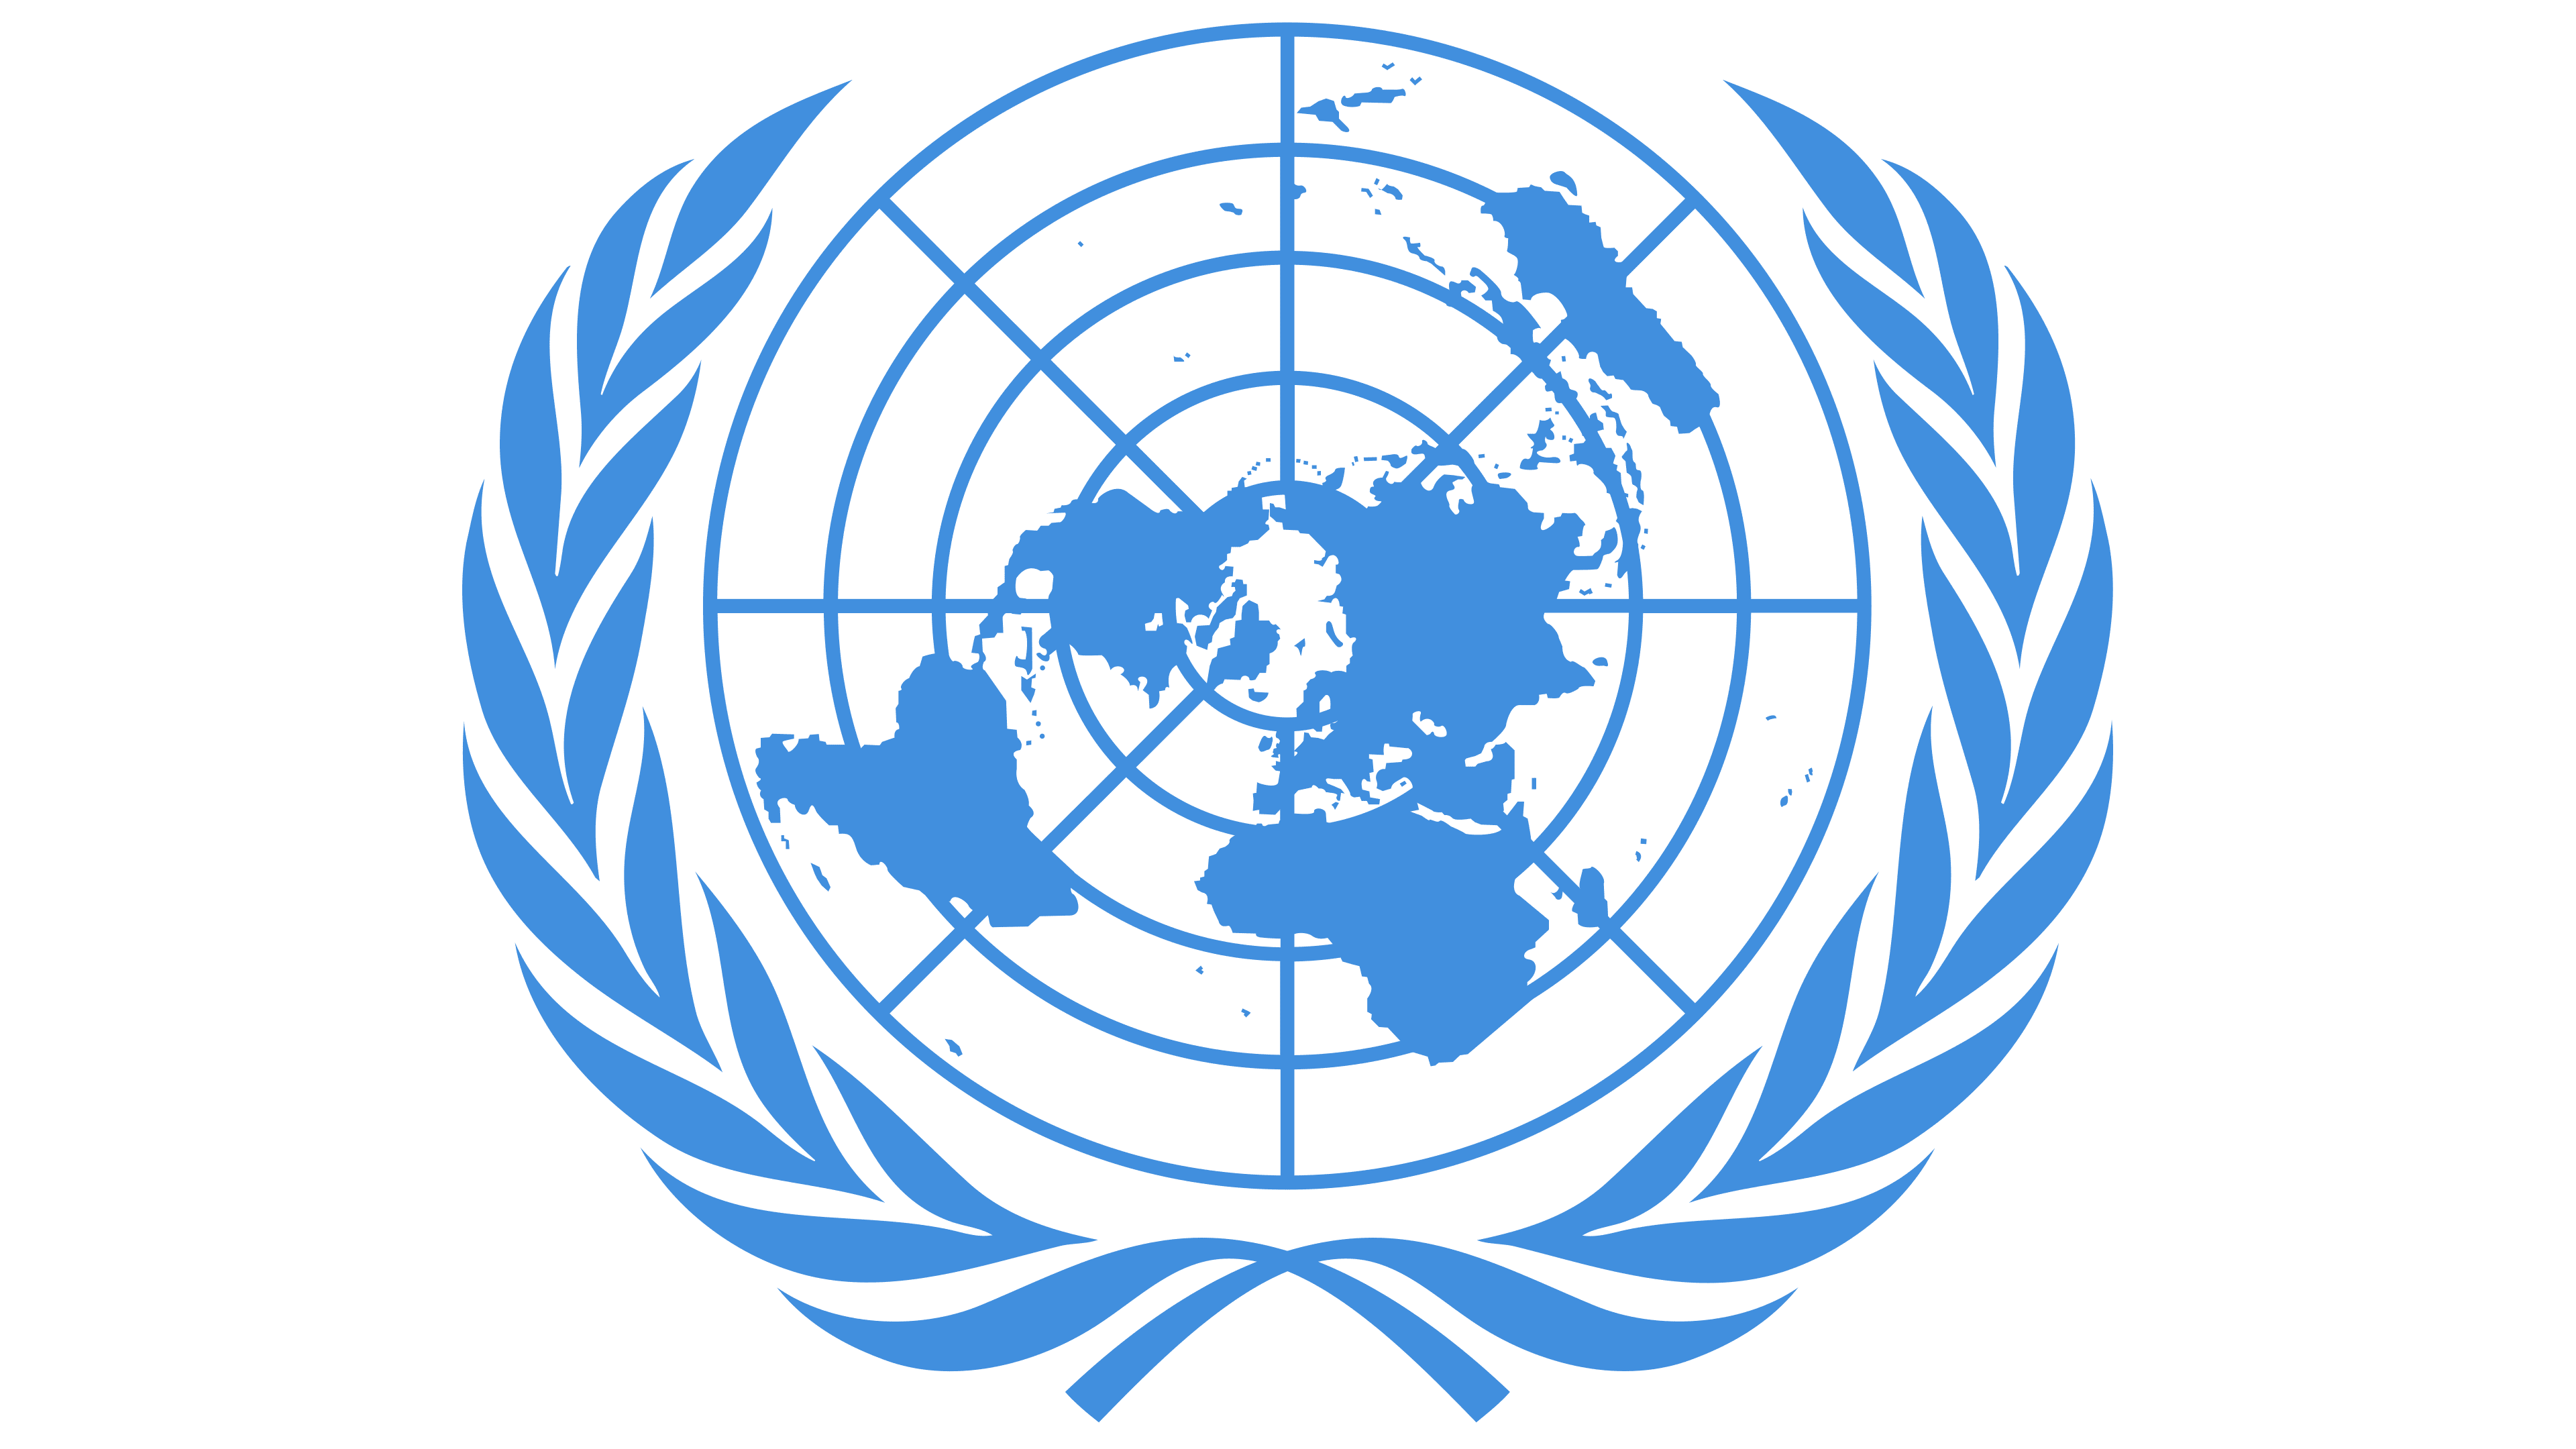 Оон общество. Генеральная Ассамблея ООН эмблема. Совет безопасности ООН эмблема. Европейская экономическая комиссия ООН (ЕЭК ООН). Логотип UNDP.